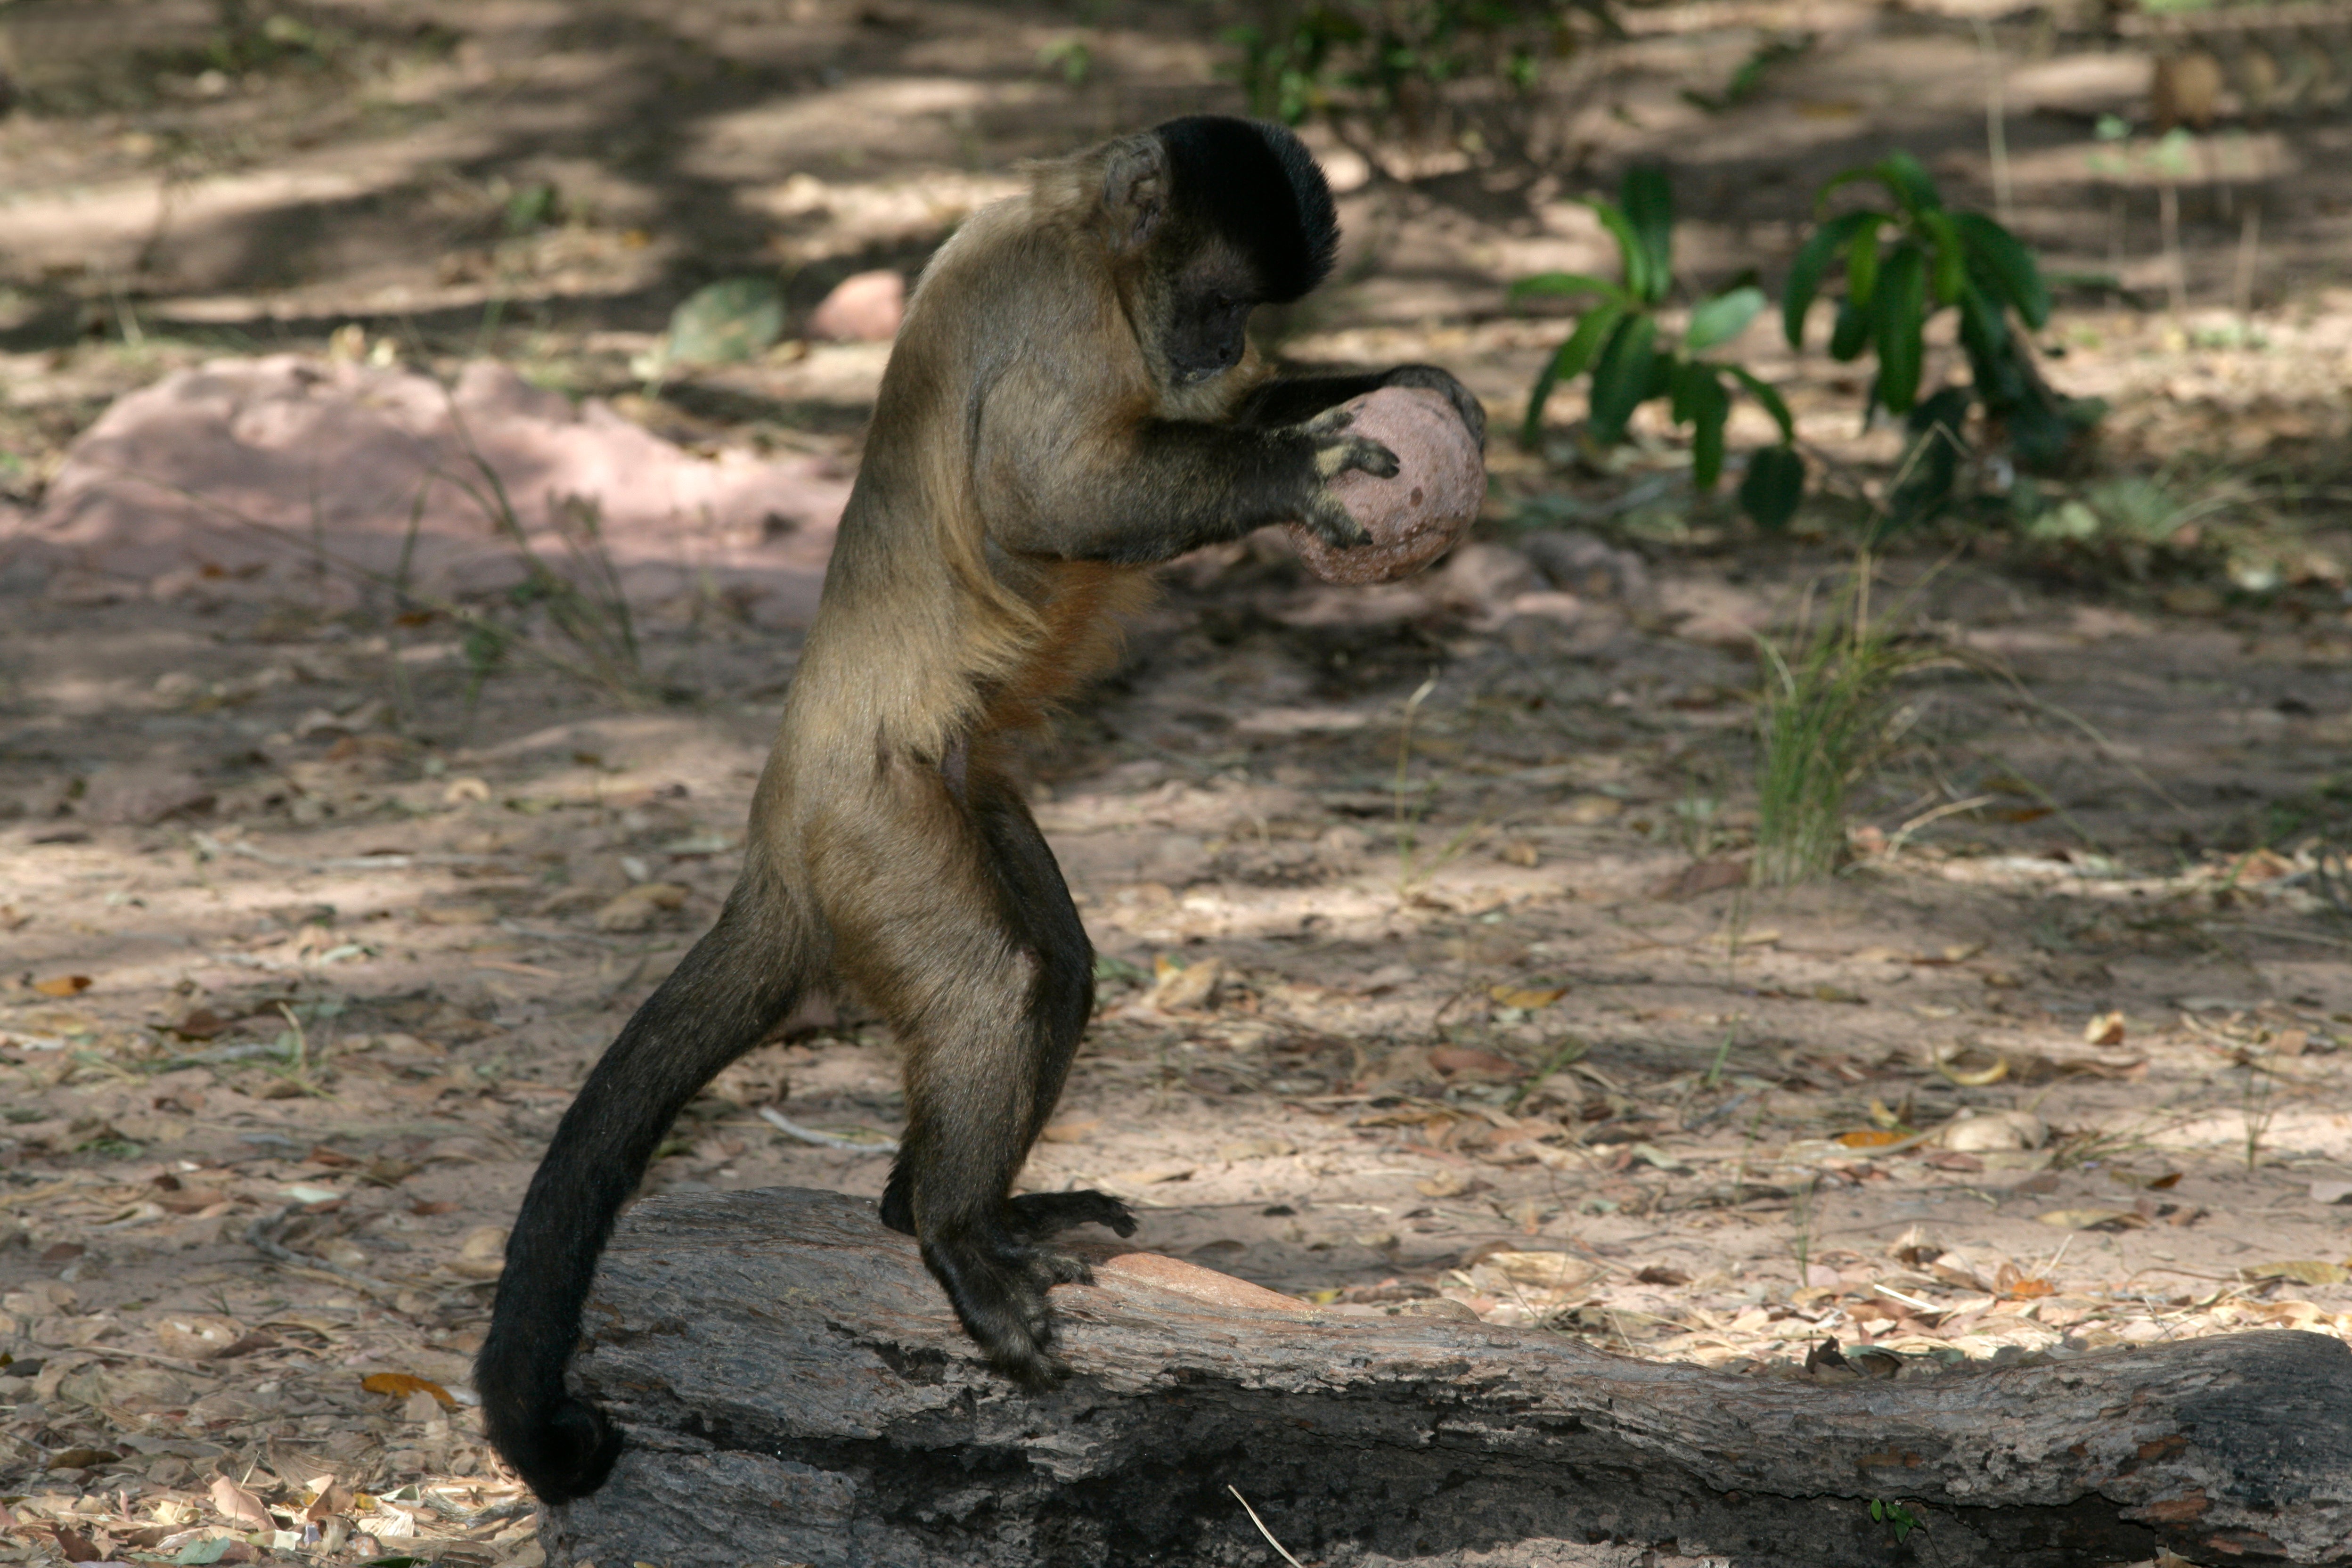 A capuchin monkey breaking open a nut in Brazil